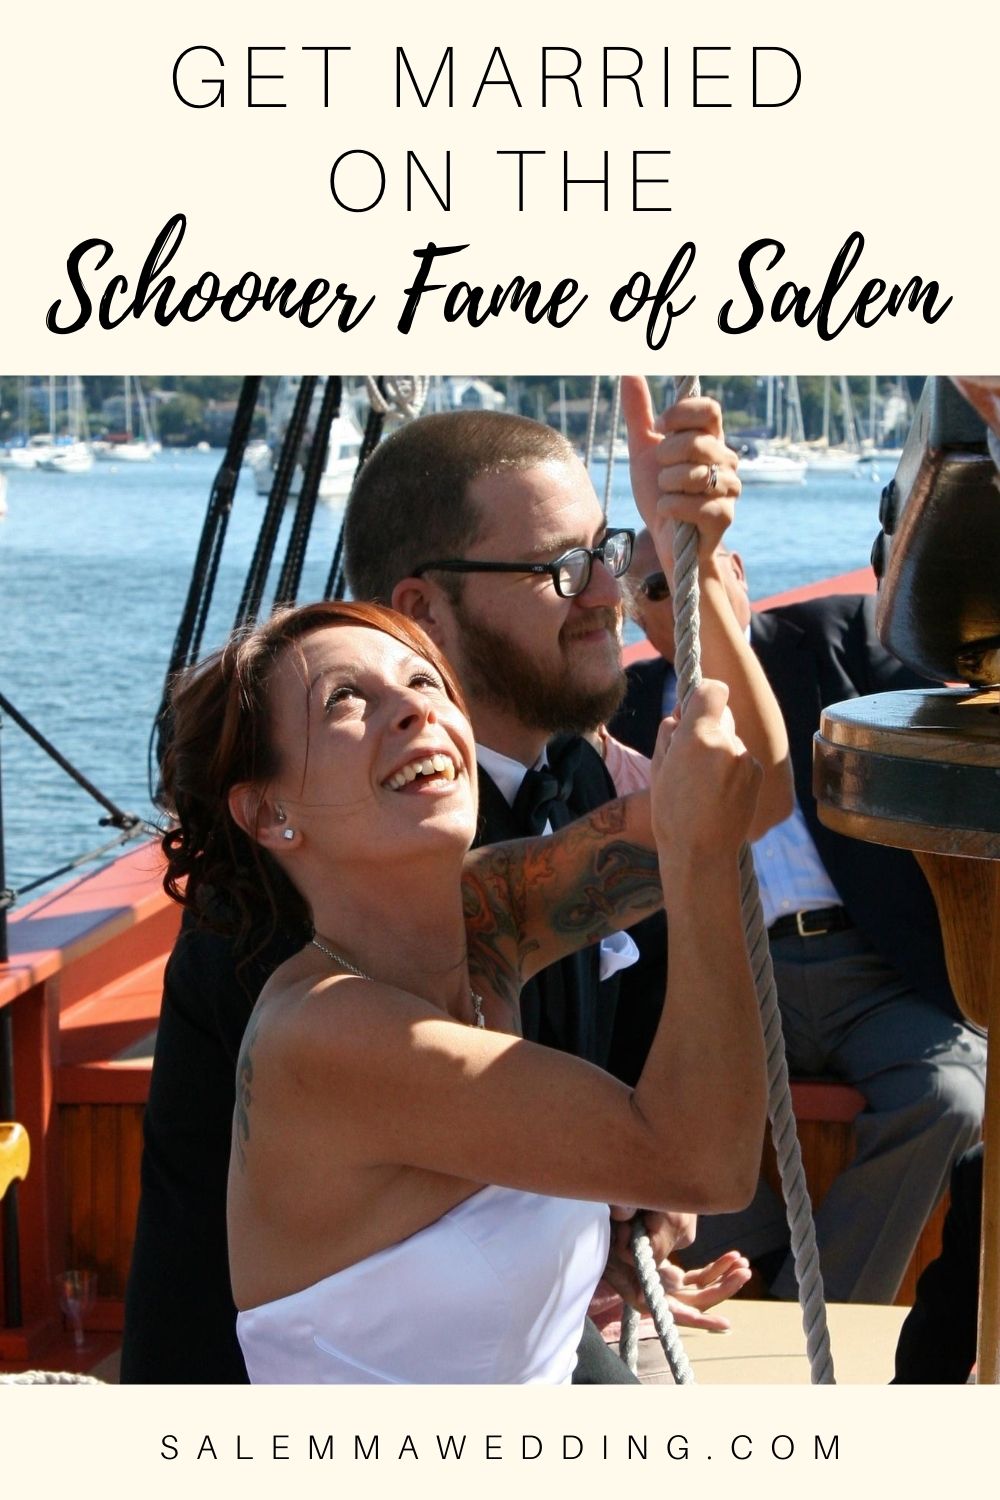 salem ma wedding, the schooner fame